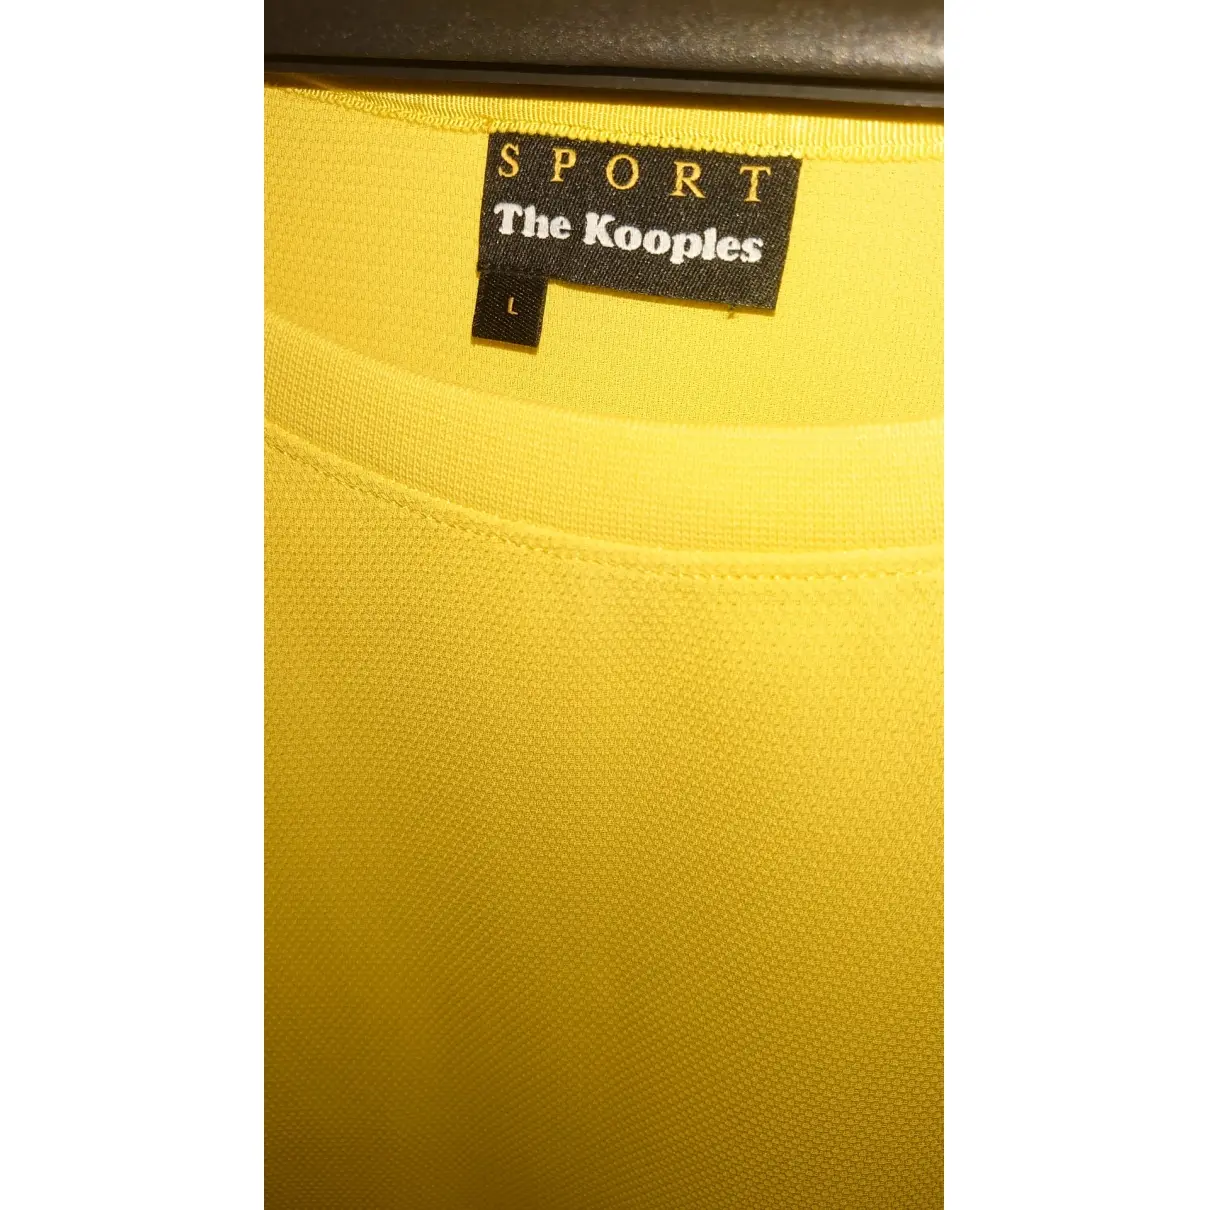 Buy The Kooples Sweatshirt online